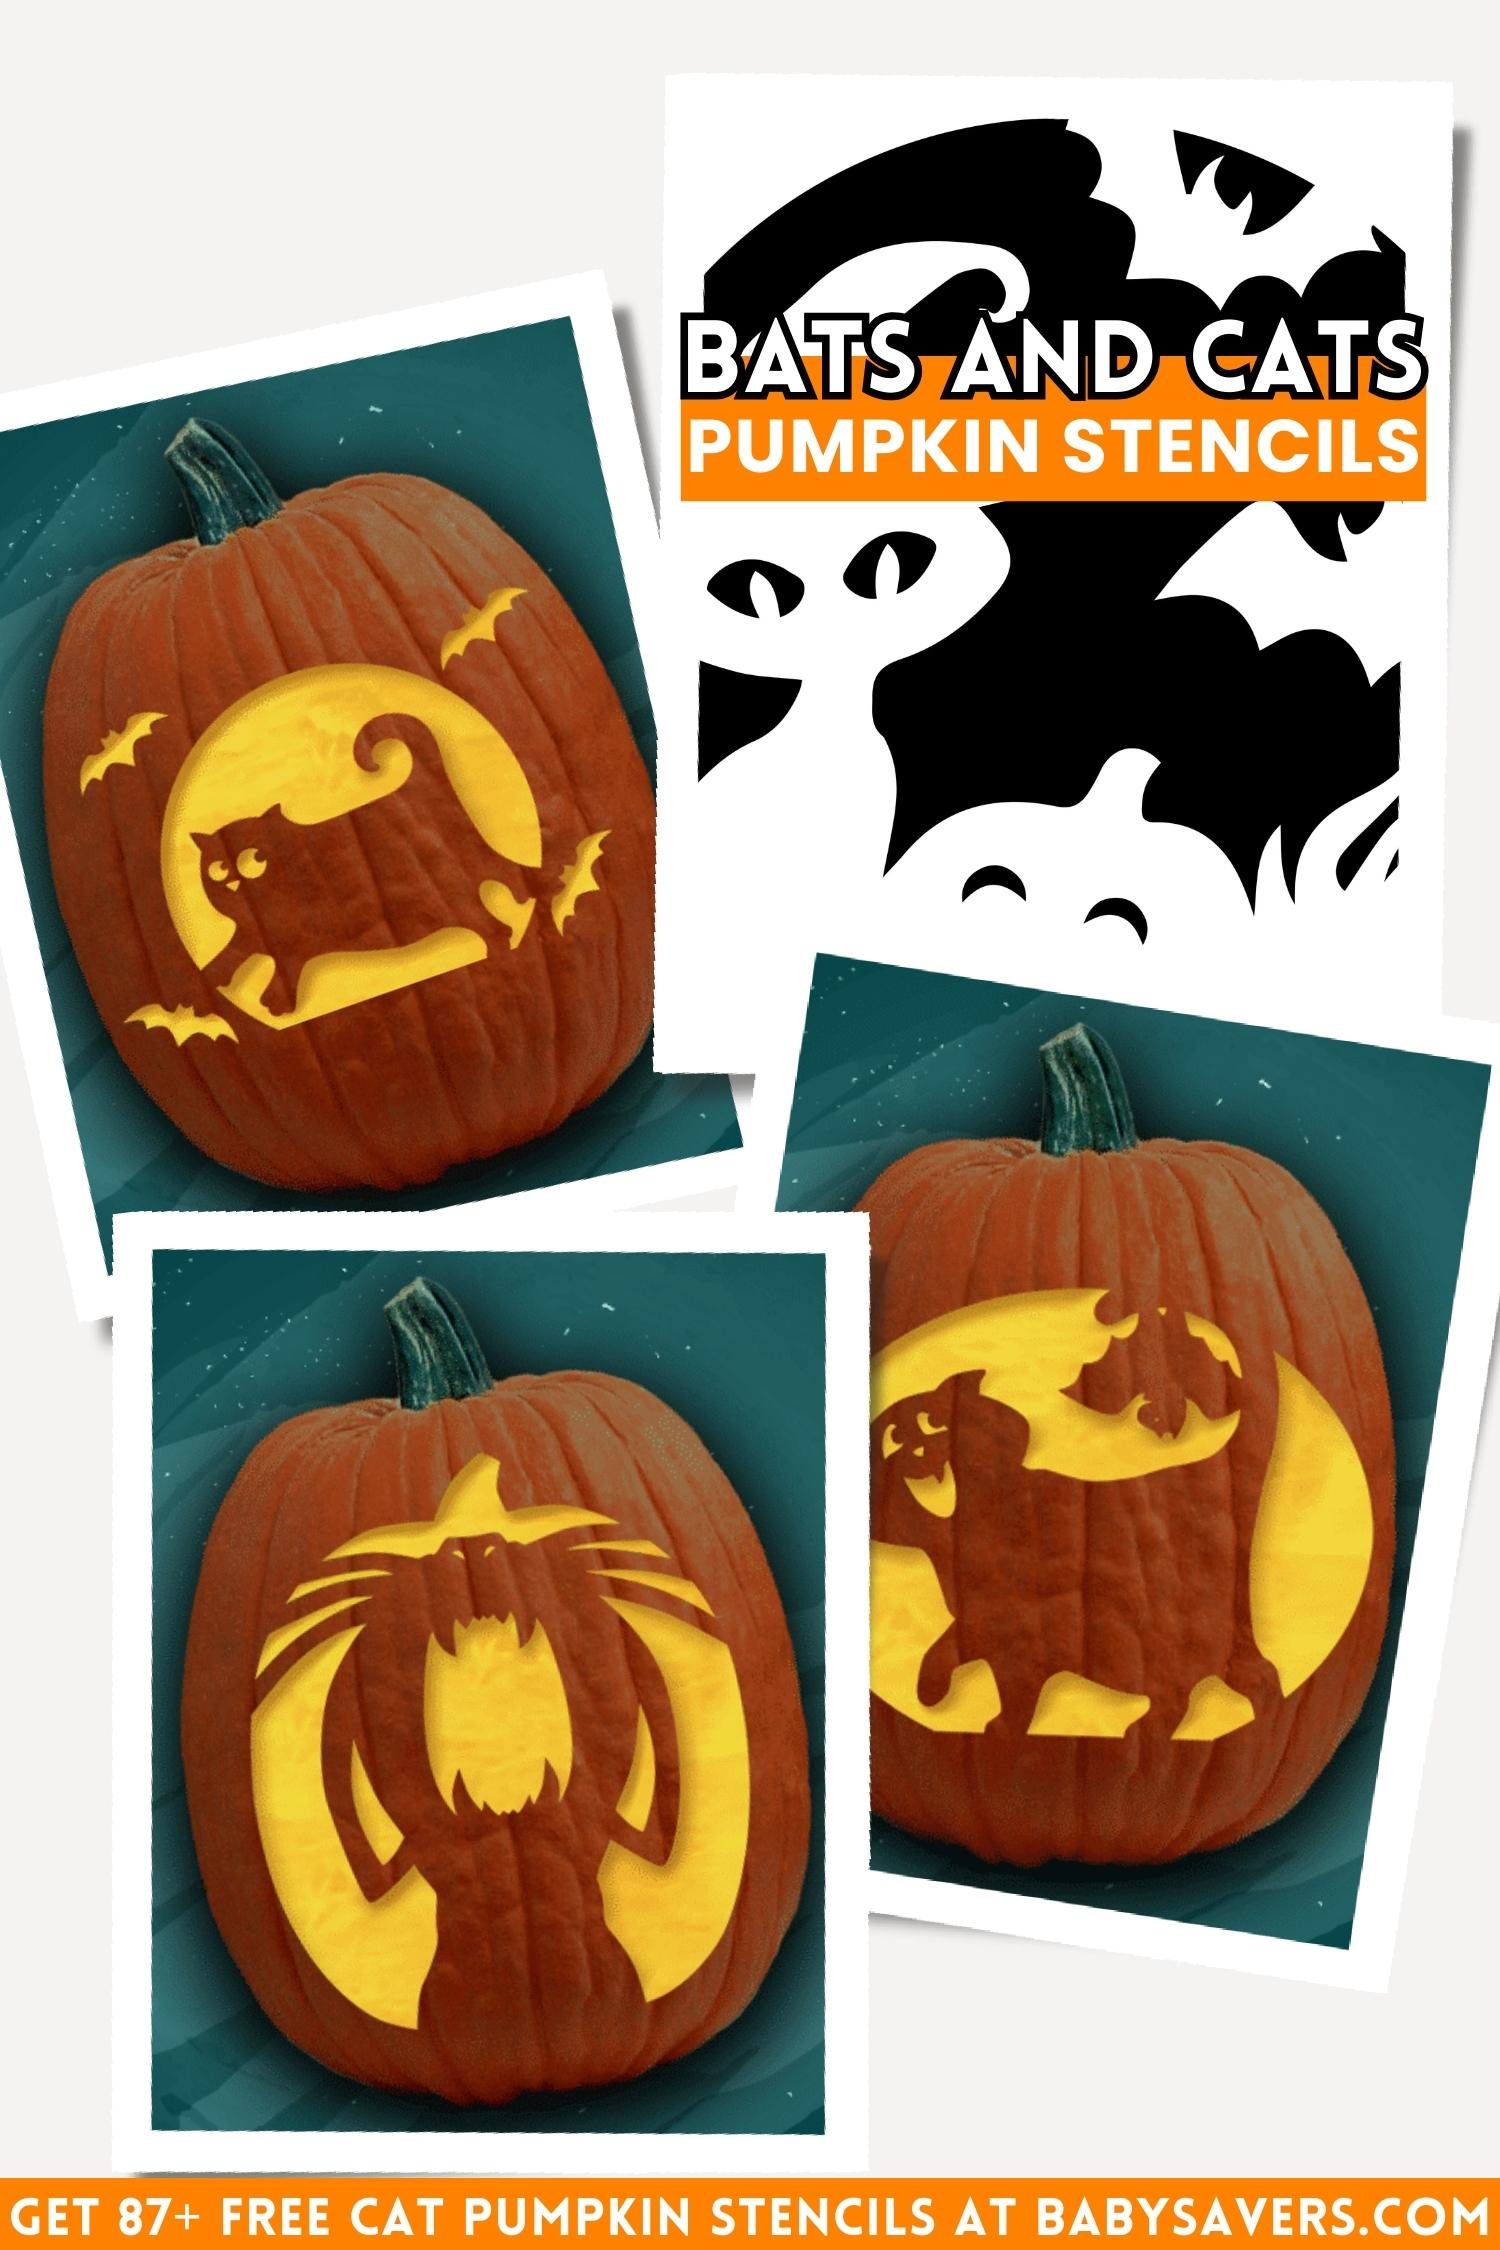 cat pumpkin stencils with bats